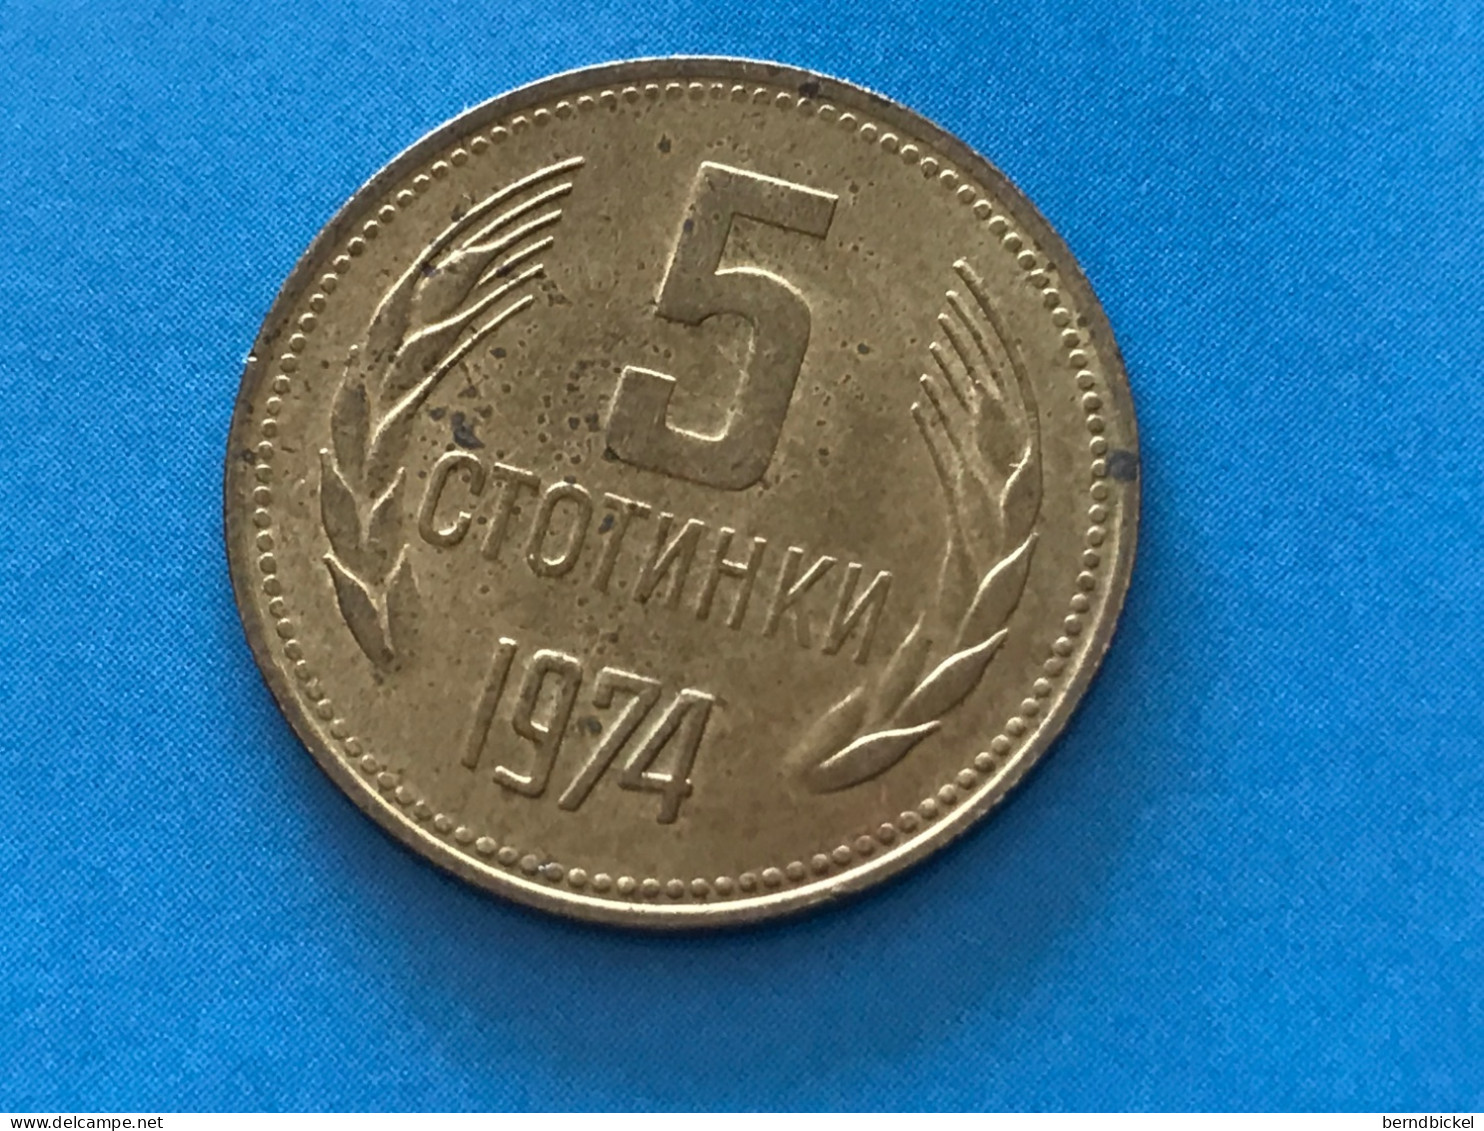 Münze Münzen Umlaufmünze Bulgarien 5 Stotinki 1974 - Bulgaria